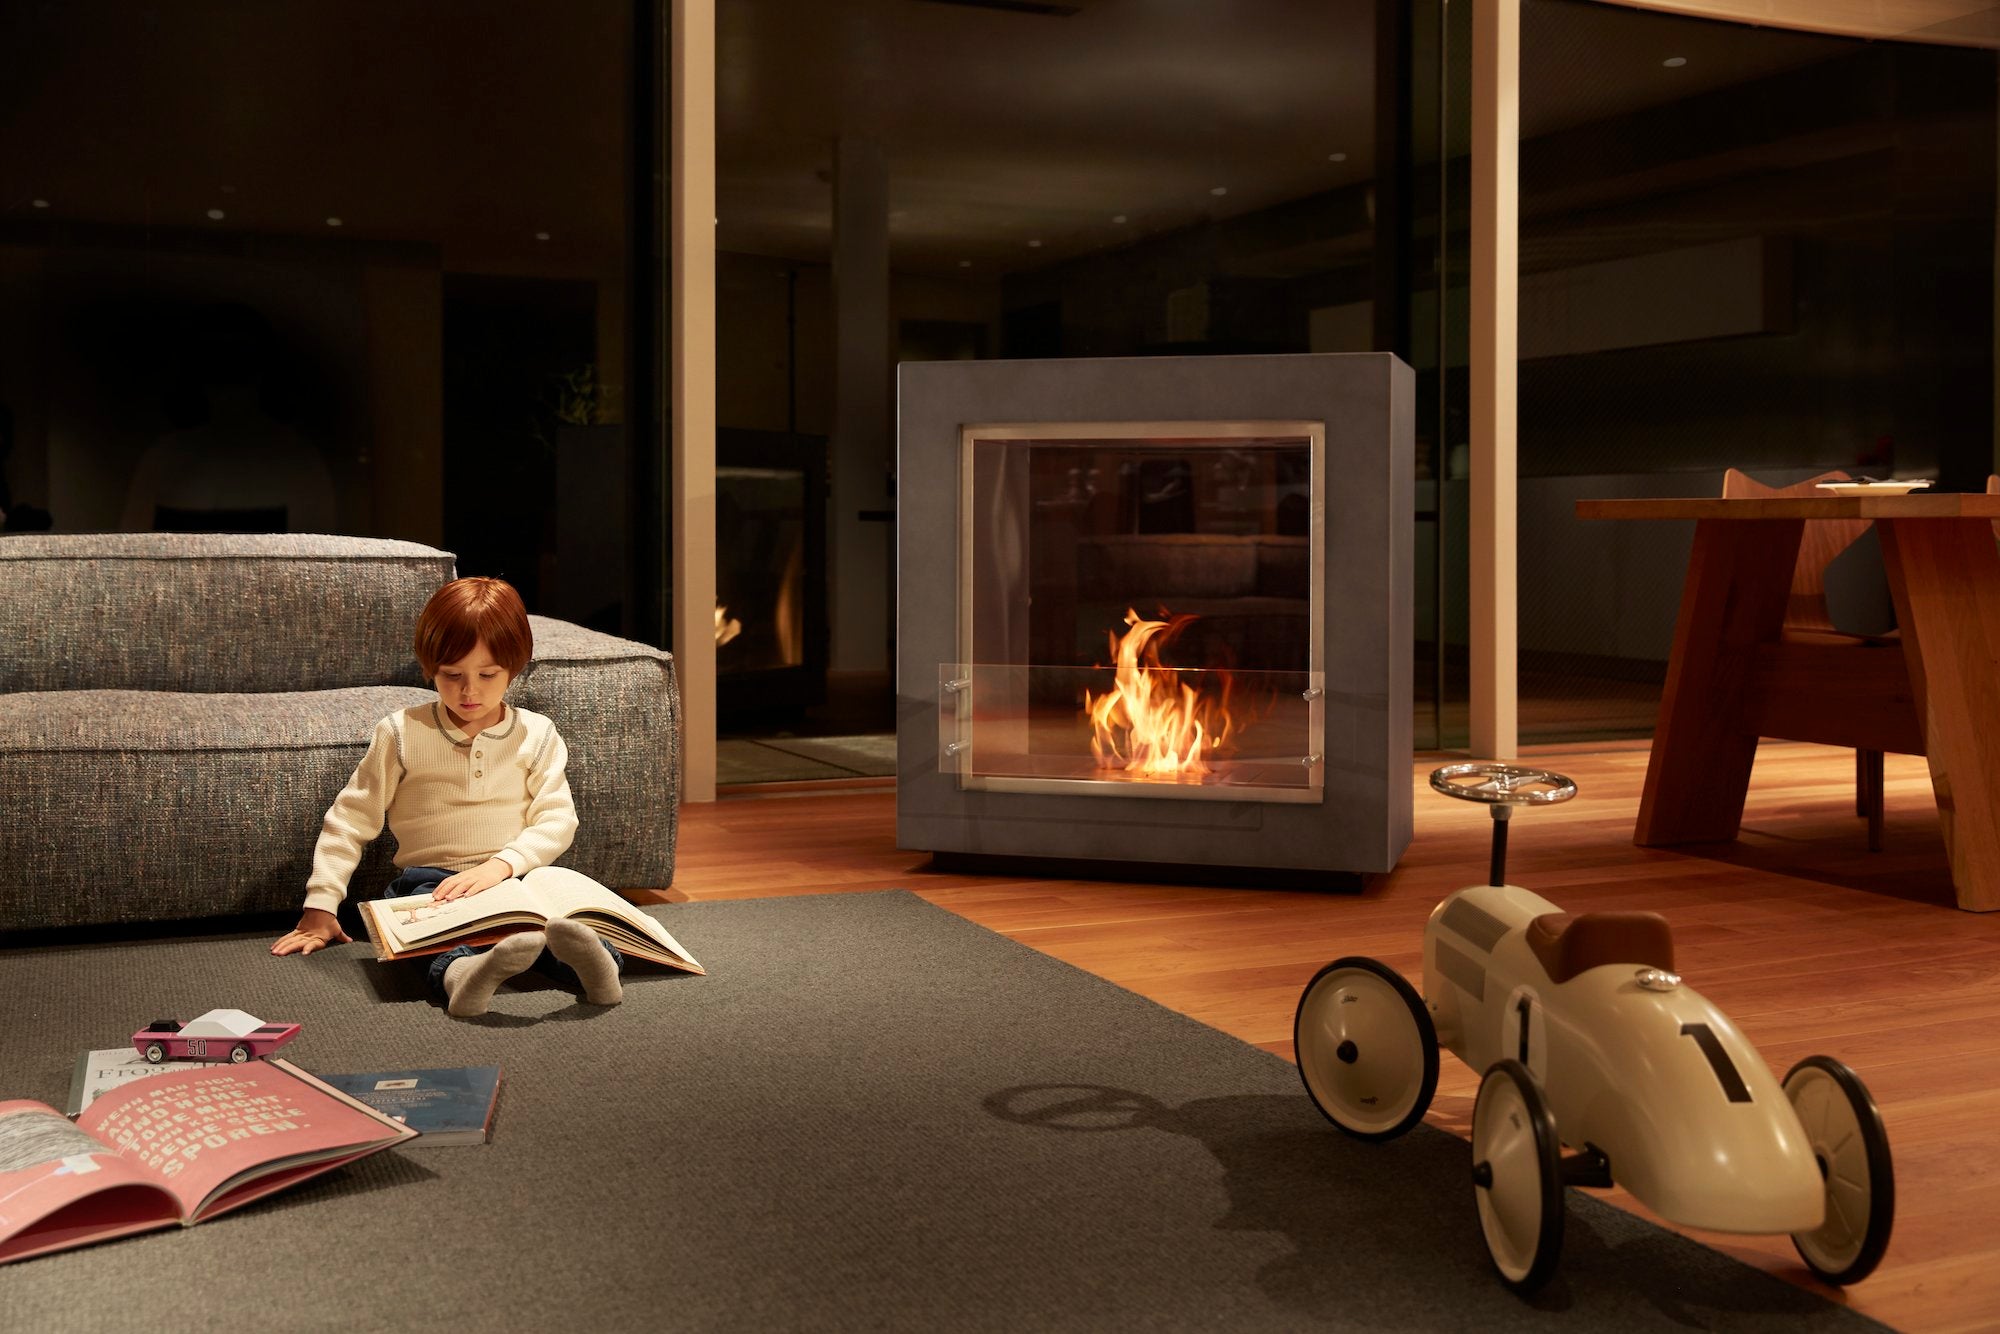 バイオエタノール暖炉「EcoSmart Fire」製品のFUSION STANDARD COLORをリビングに置き子どもが温まっている画像。暖炉と違って工事が不要なため、自由な場所に配置できています。